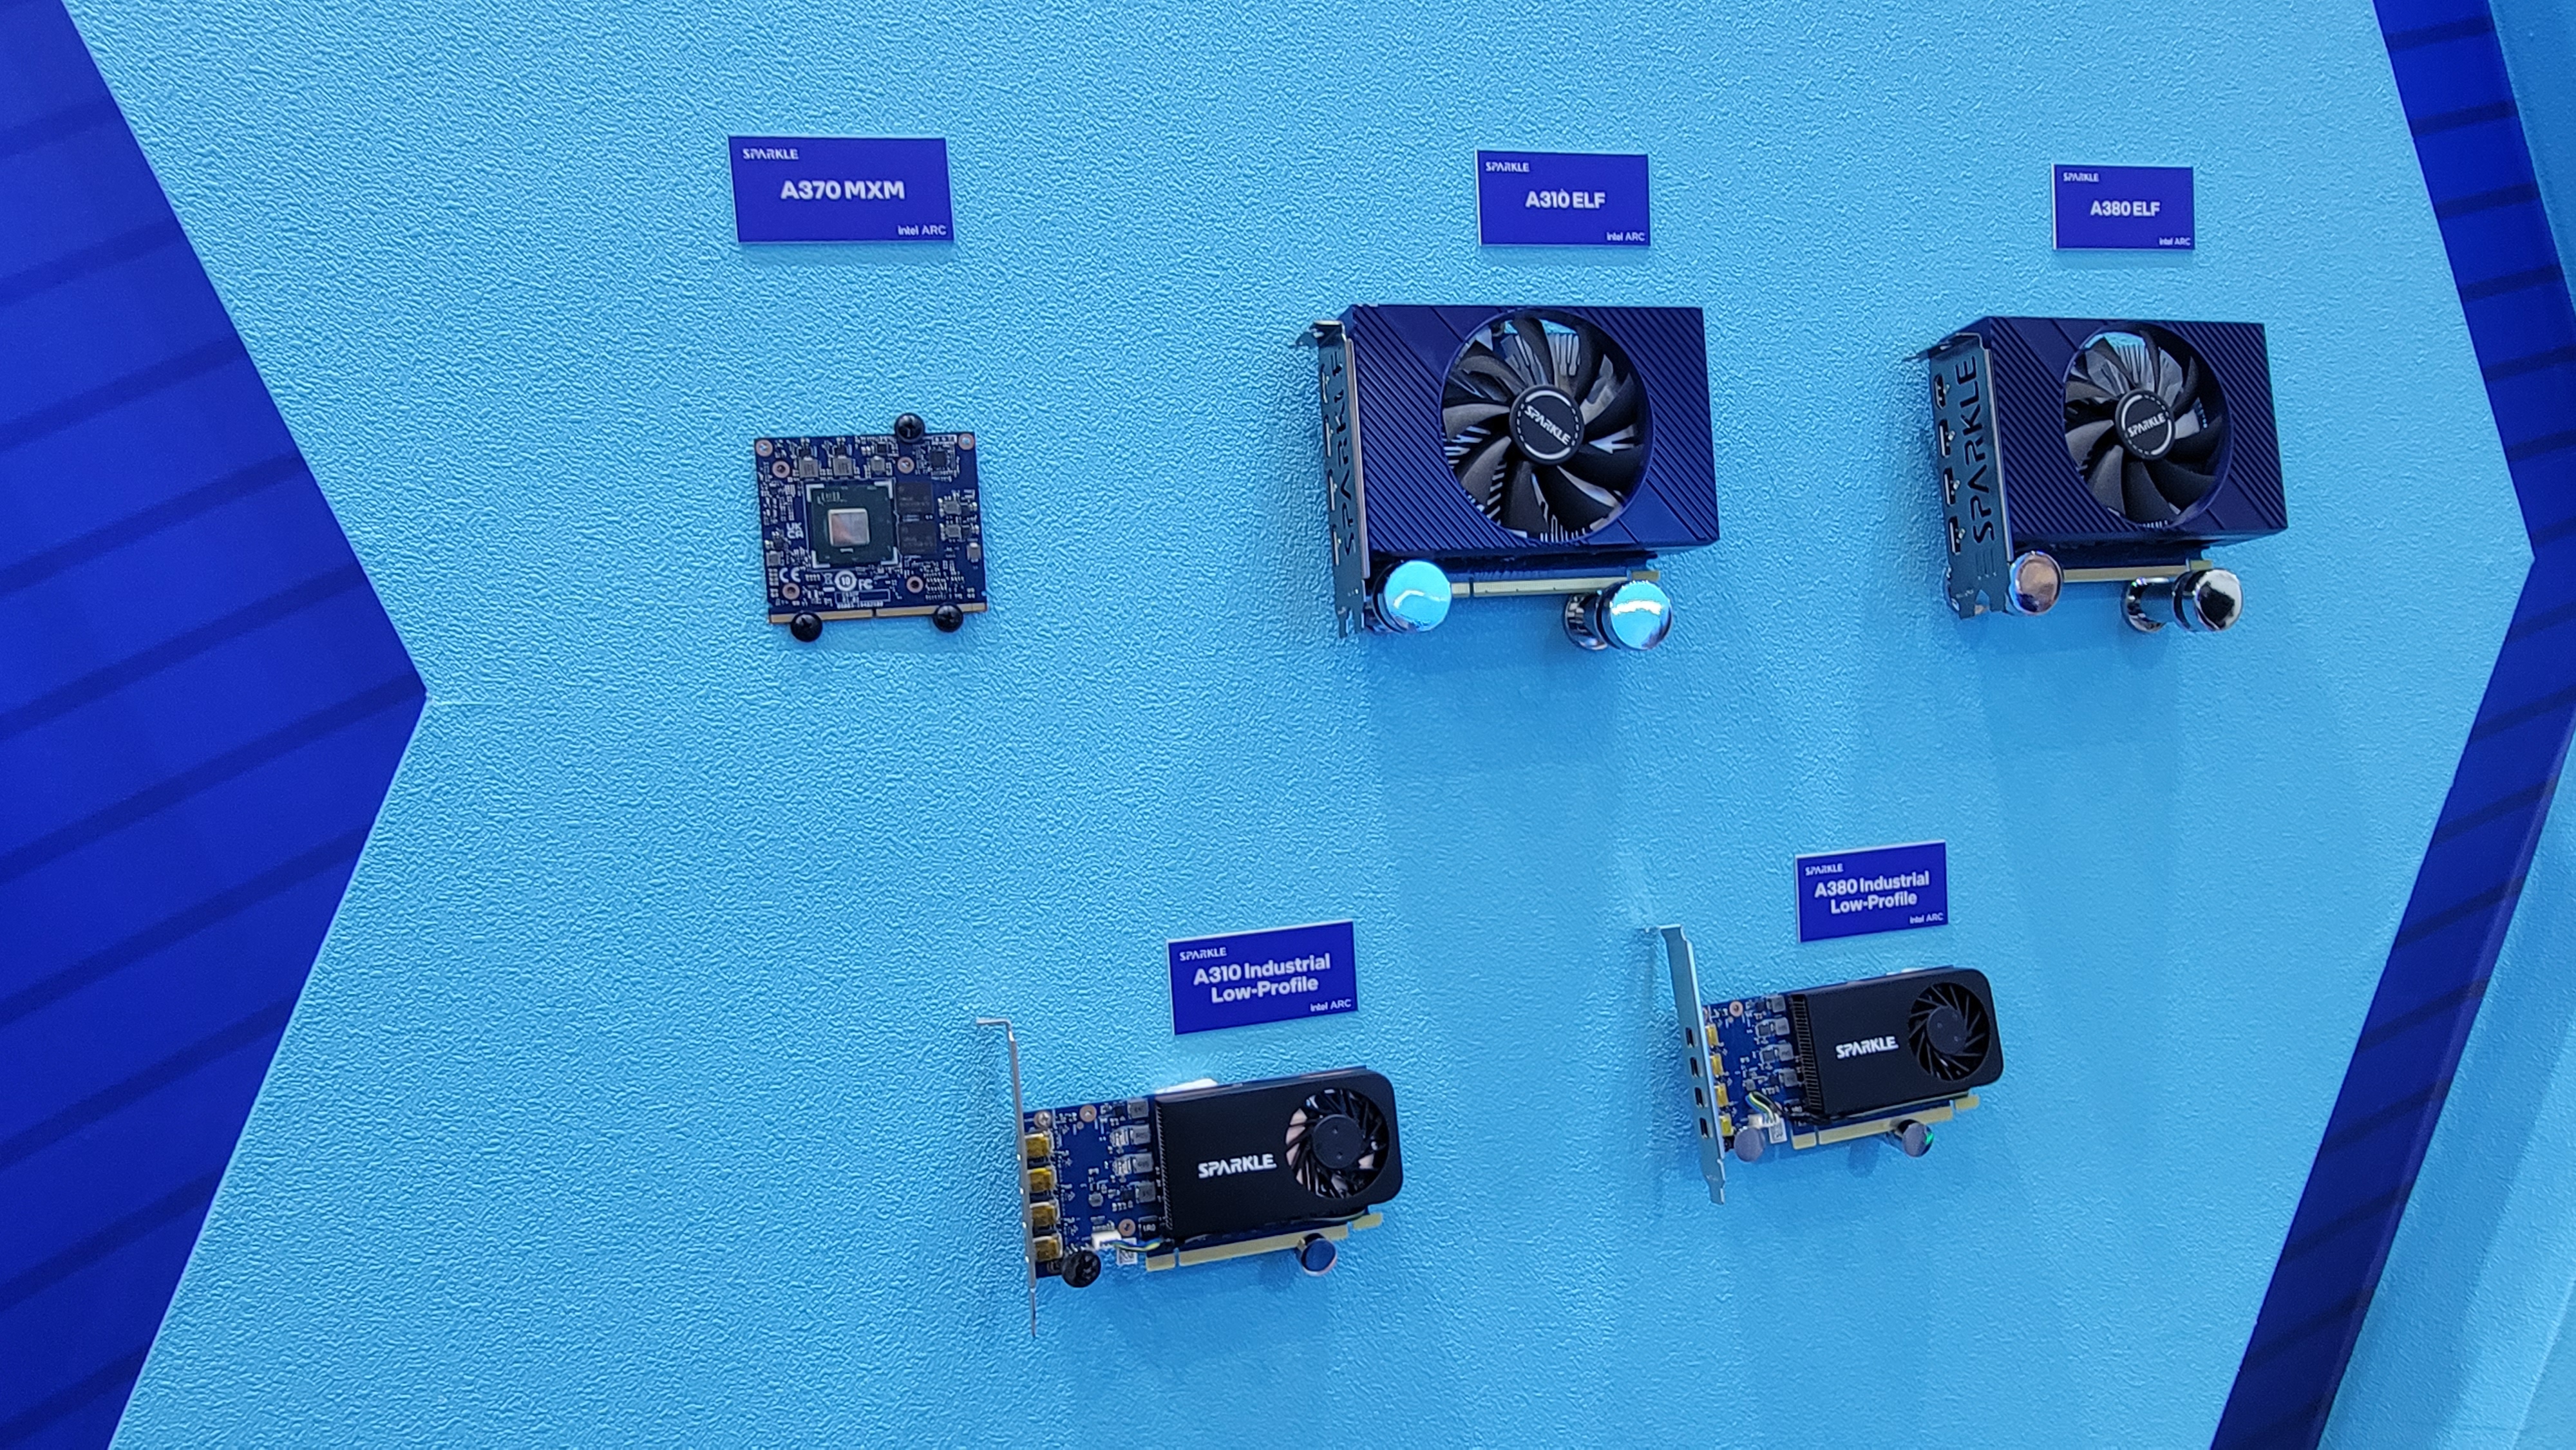 Immagine pubblicata in relazione al seguente contenuto: Sparkle torna a produrre video card e presenta 5 modelli Intel Arc e un concept | Nome immagine: news34542_Sparkle-Intel-ARC_2.jpg